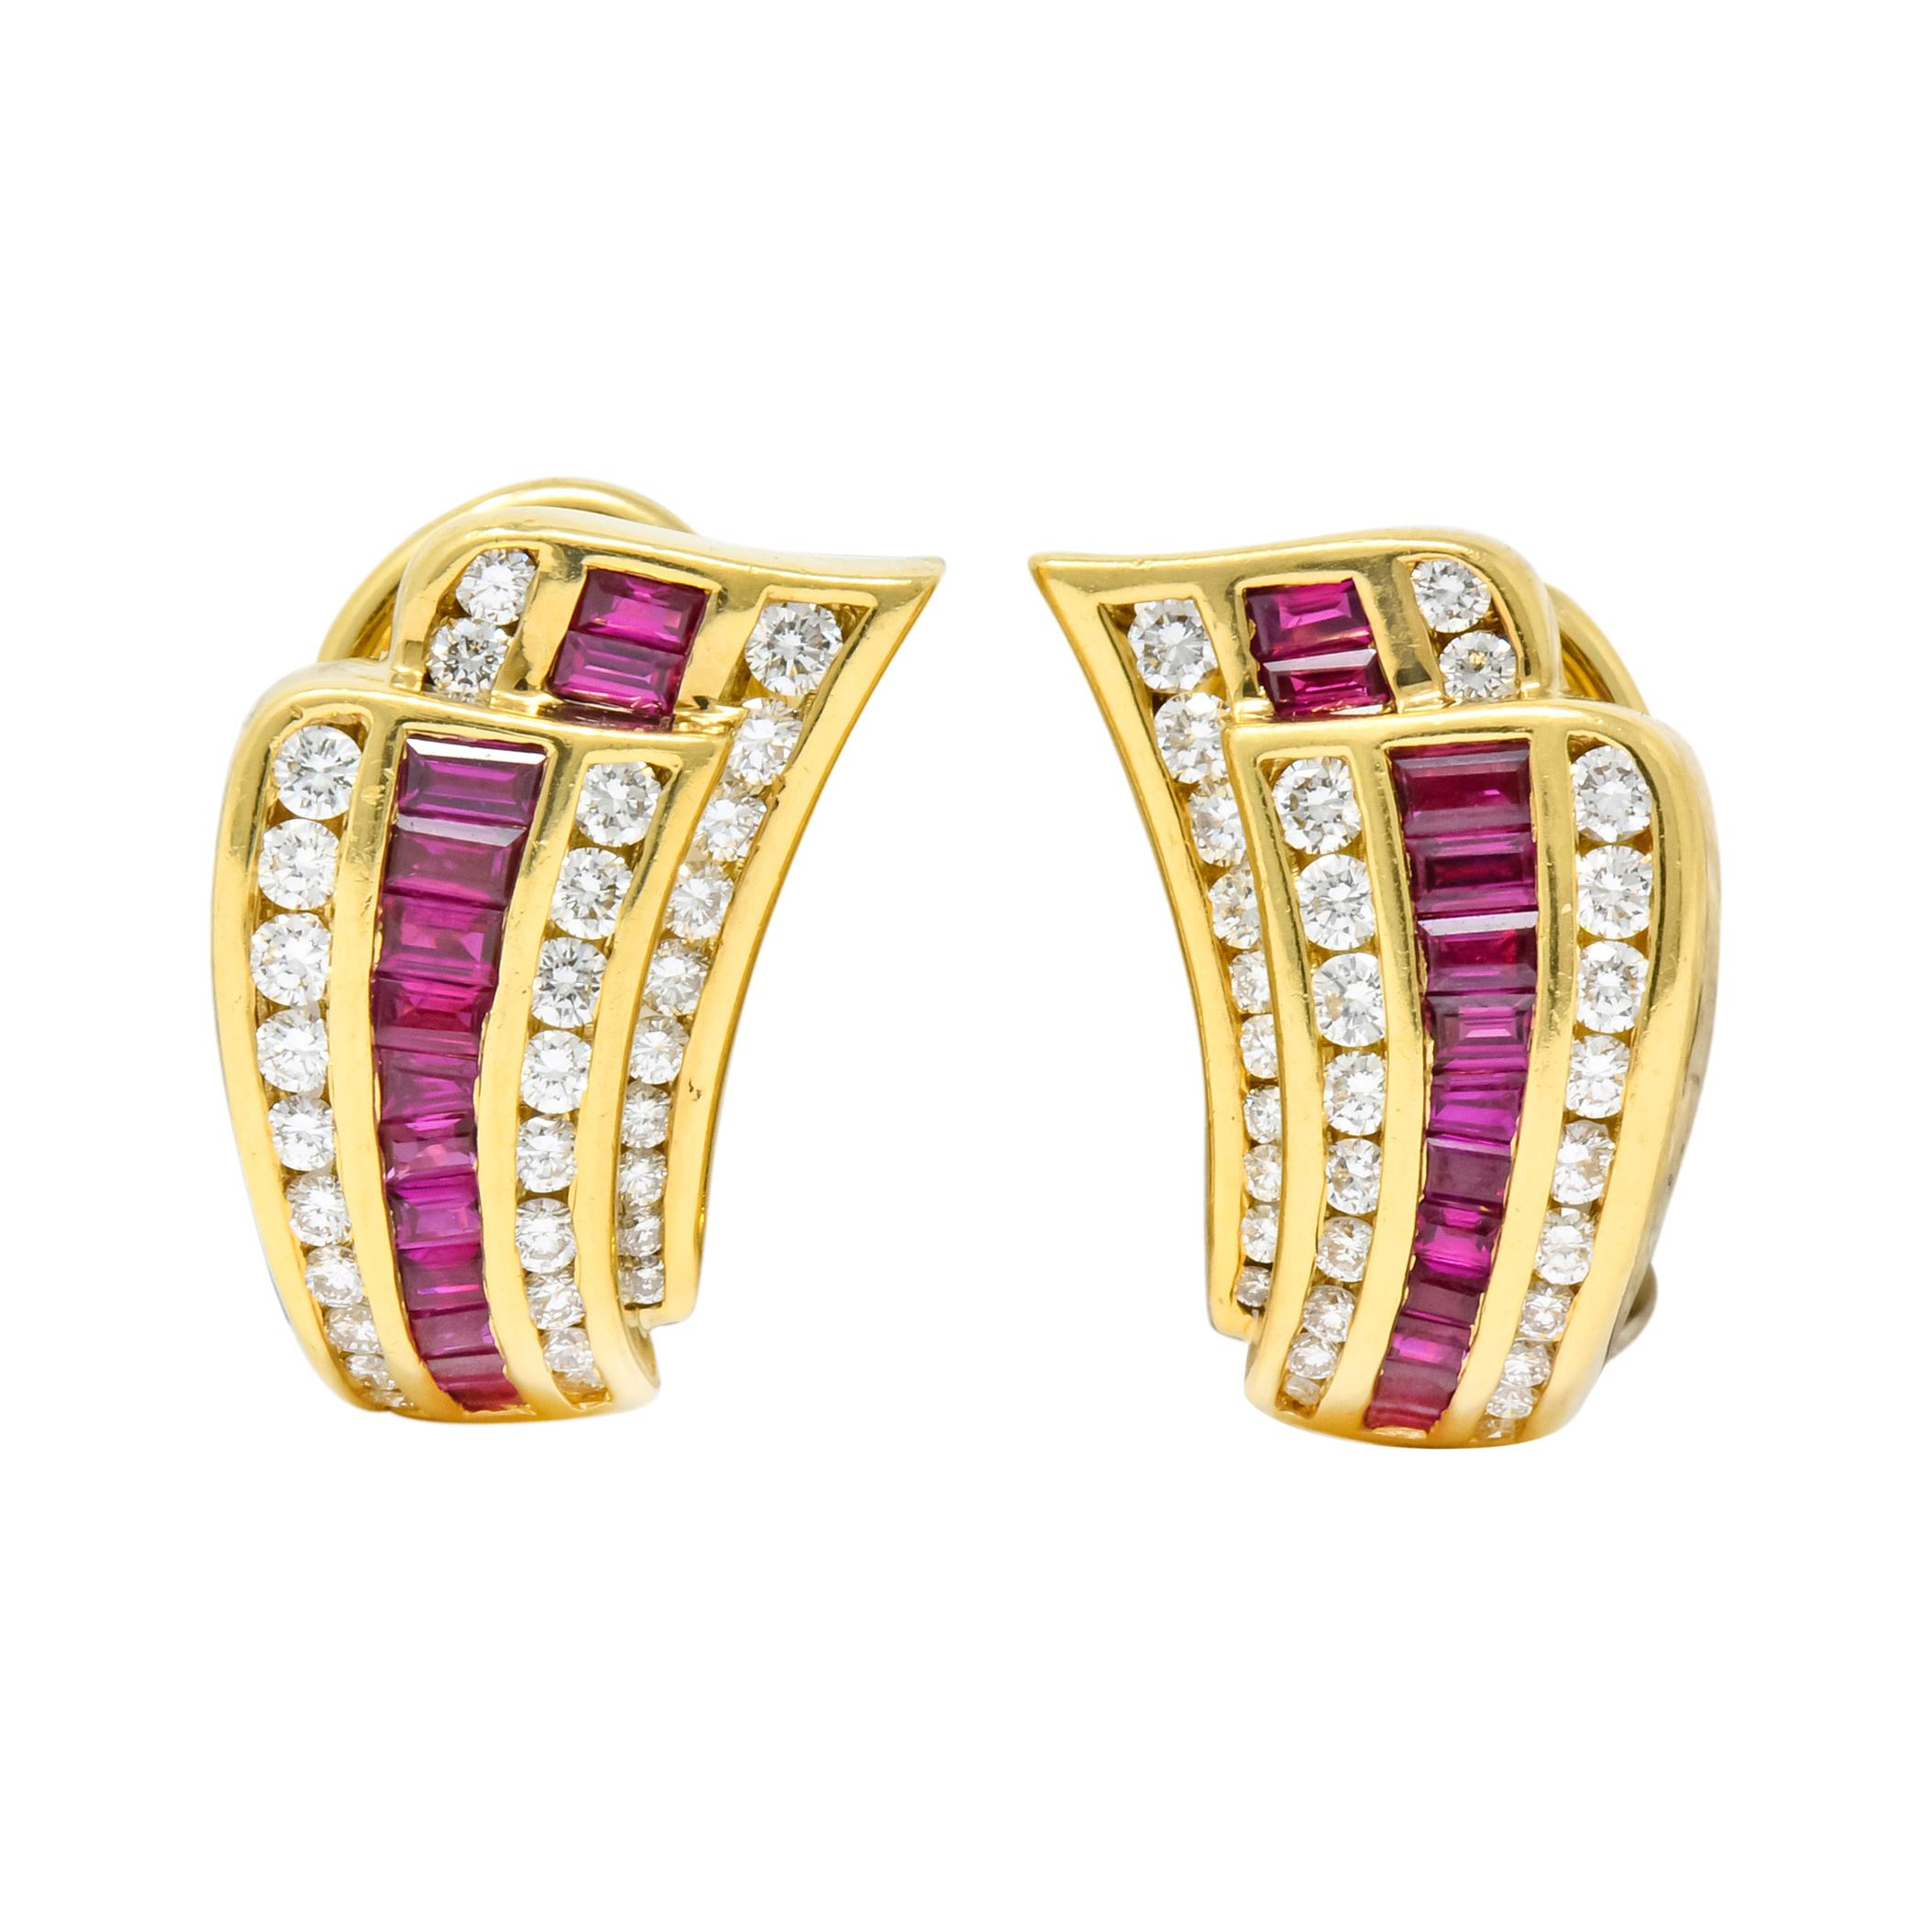 Charles Krypell Vintage 1.80 Carat Ruby Diamond 18 Karat Gold Earrings